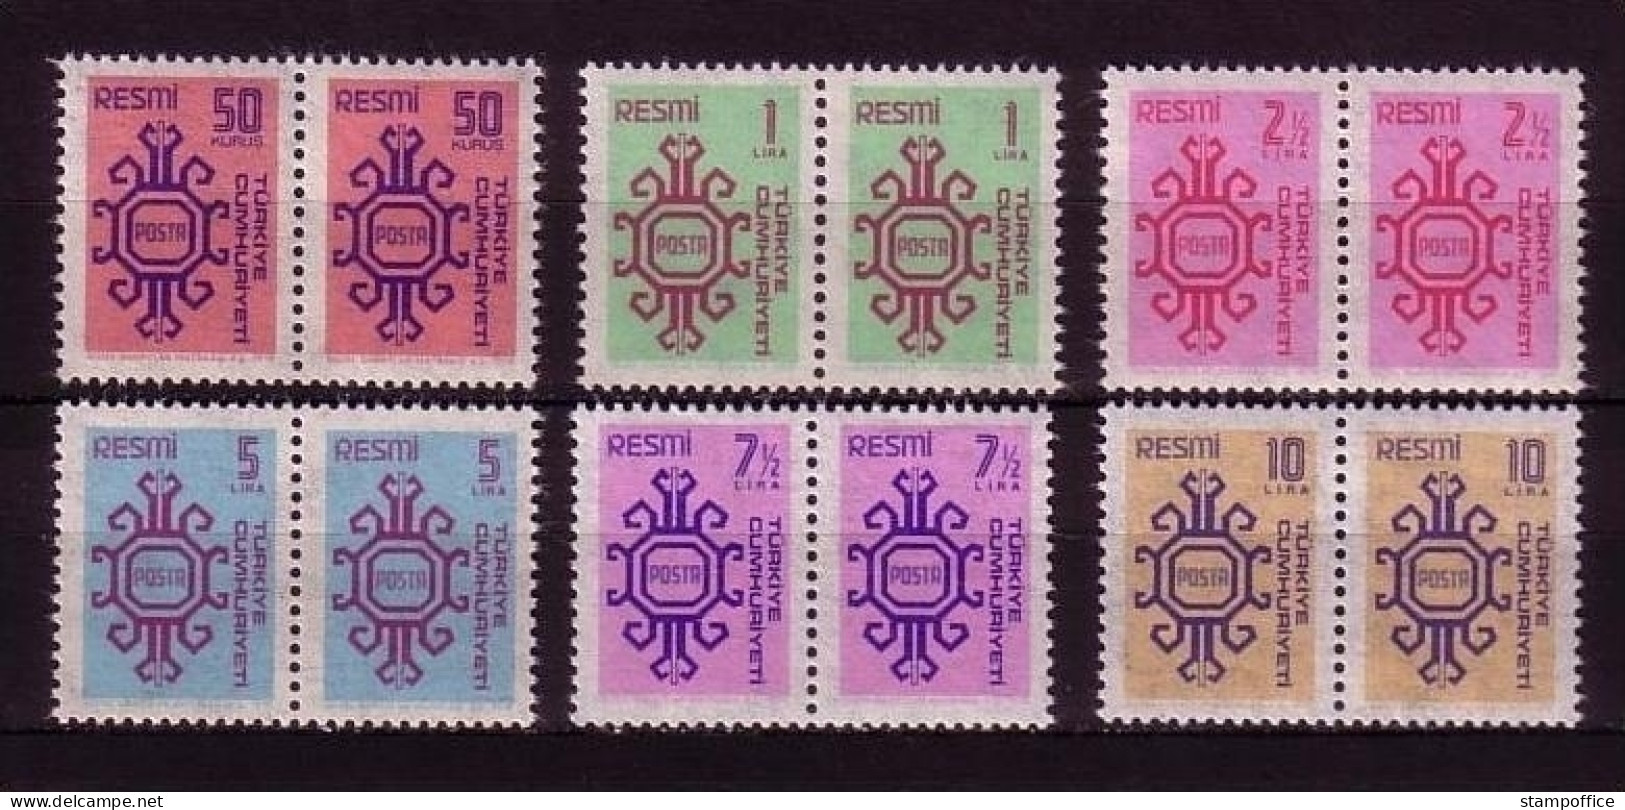 TÜRKEI DIENSTMARKEN MI-NR. 155-160 POSTFRISCH(MINT) Pärchen ORNAMENTE - Official Stamps